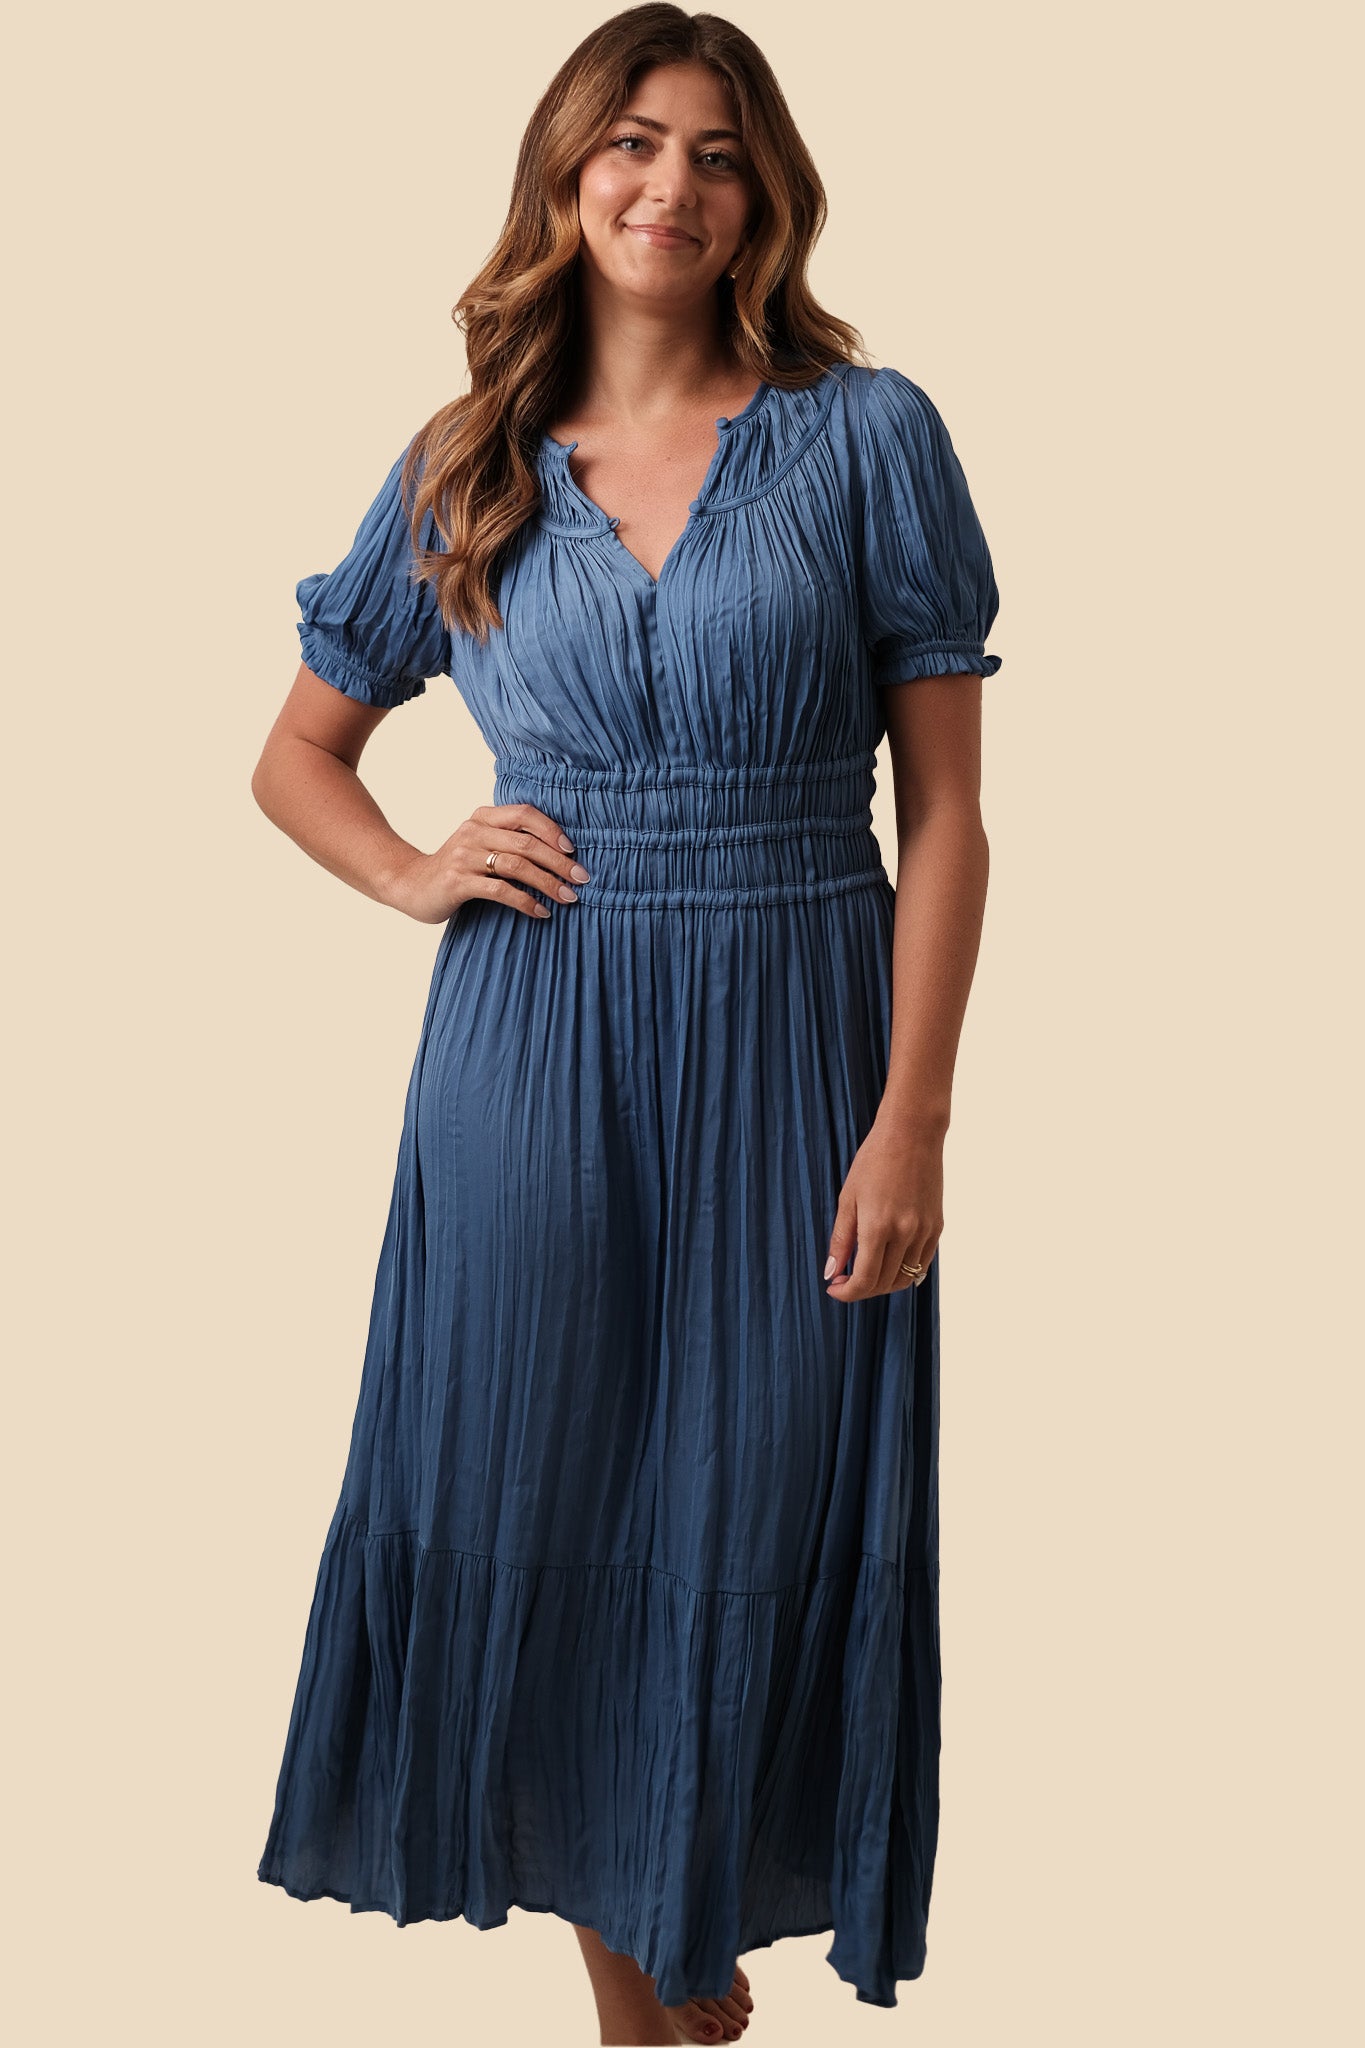 Current Air Brooklyn Pleated Midi Dress (Blue)